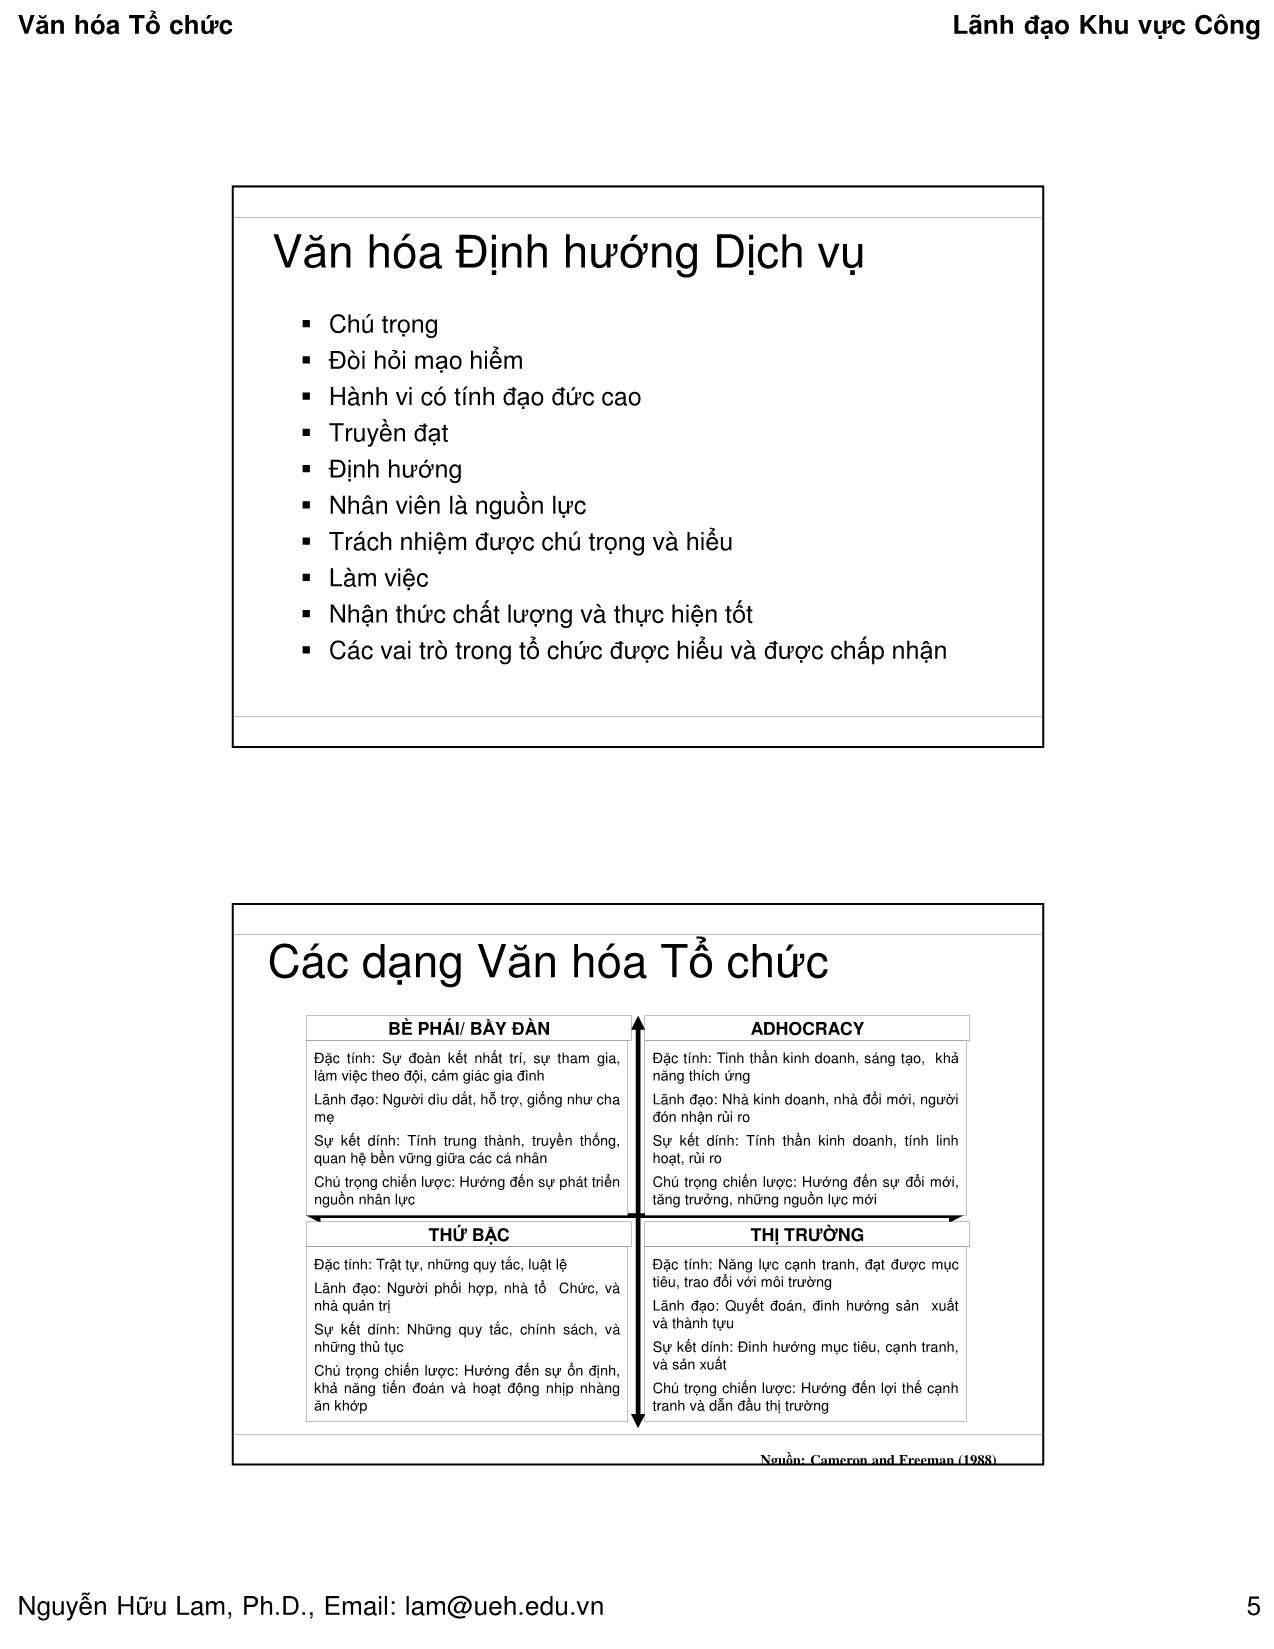 Bài giảng Quản lý công - Văn hóa tổ chức - Nguyễn Hữu Lam trang 5